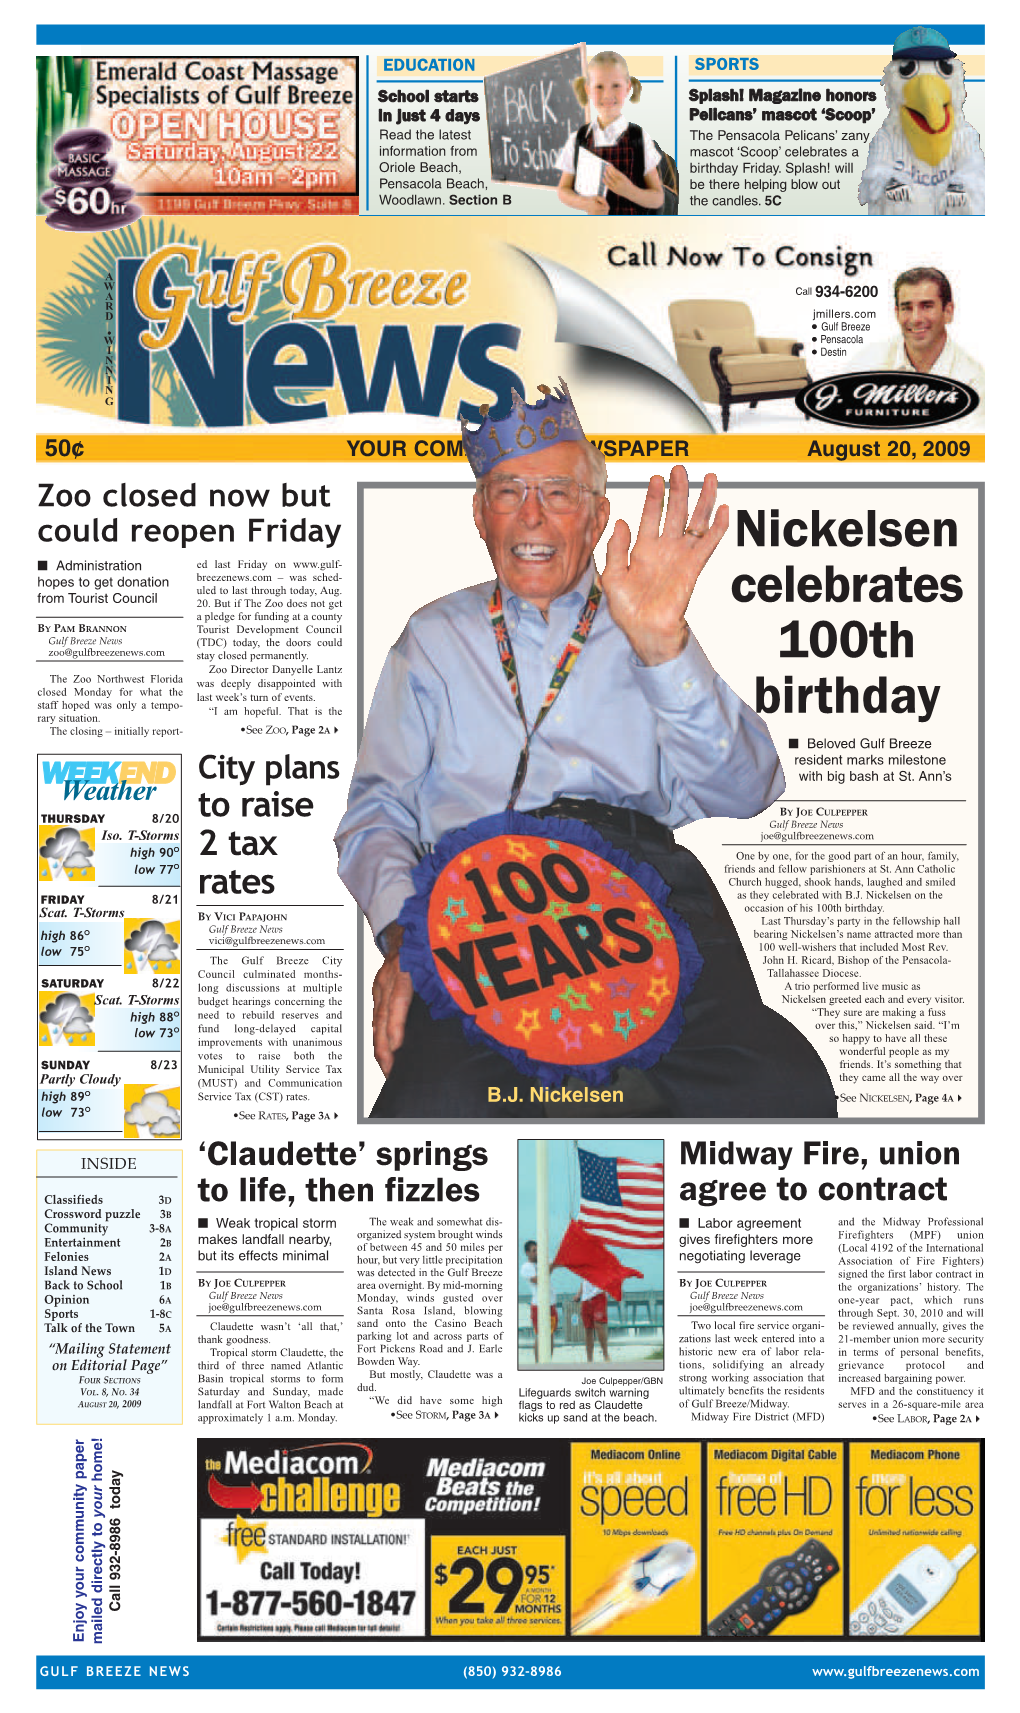 Nickelsen Celebrates 100Th Birthday